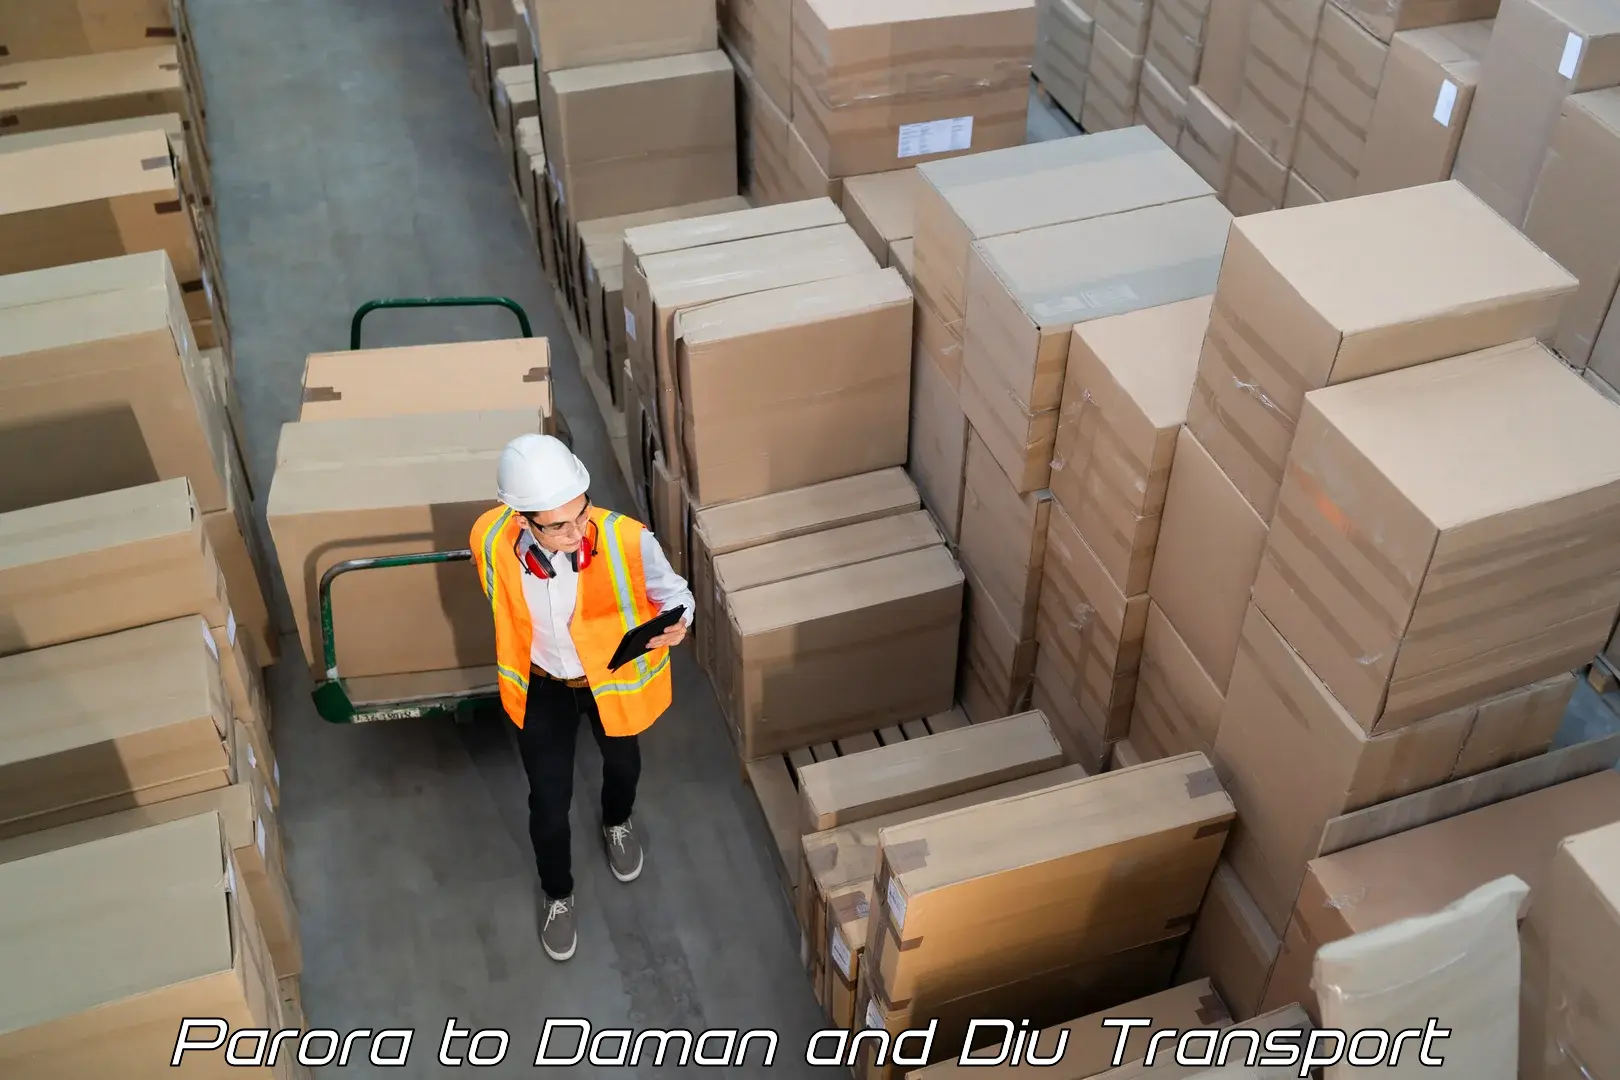 Container transport service Parora to Diu